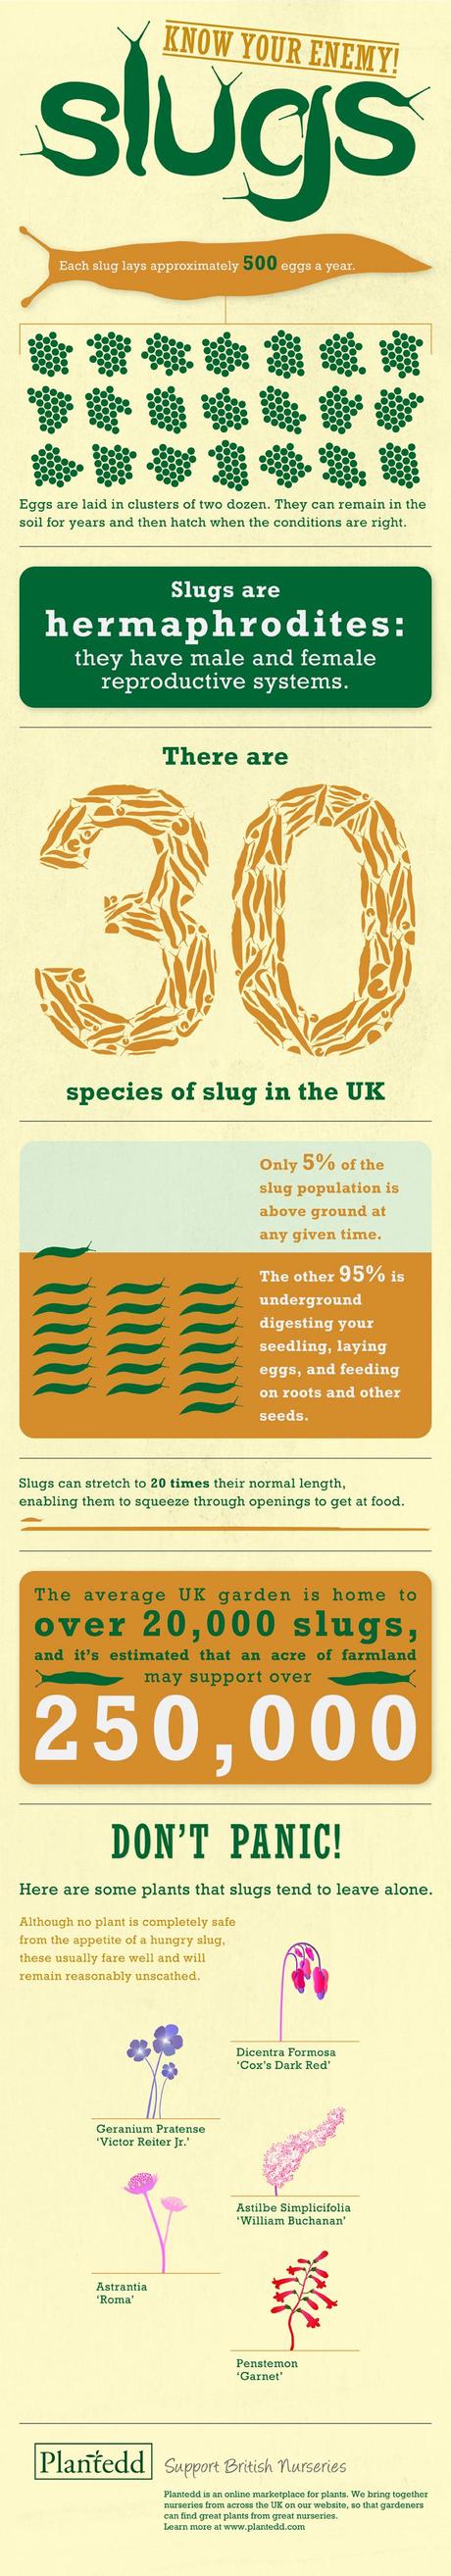 Slug_infographic_final